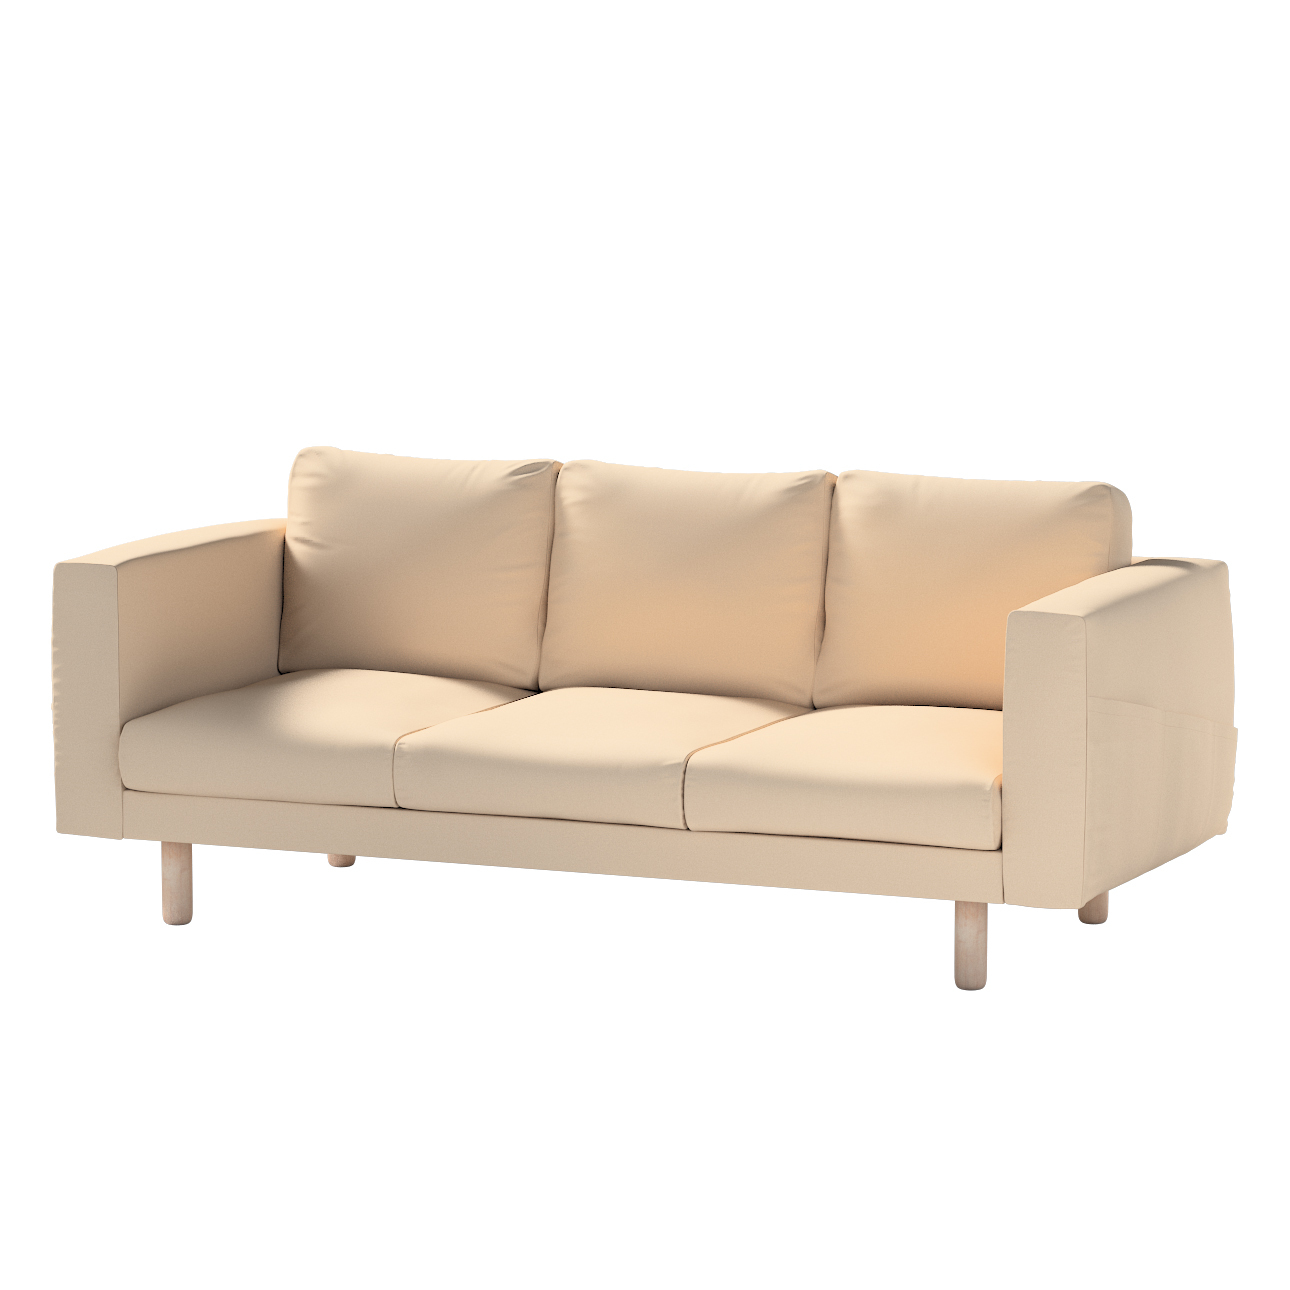 Bezug für Norsborg 3-Sitzer Sofa, creme-beige, Norsborg 3-Sitzer Sofabezug, günstig online kaufen